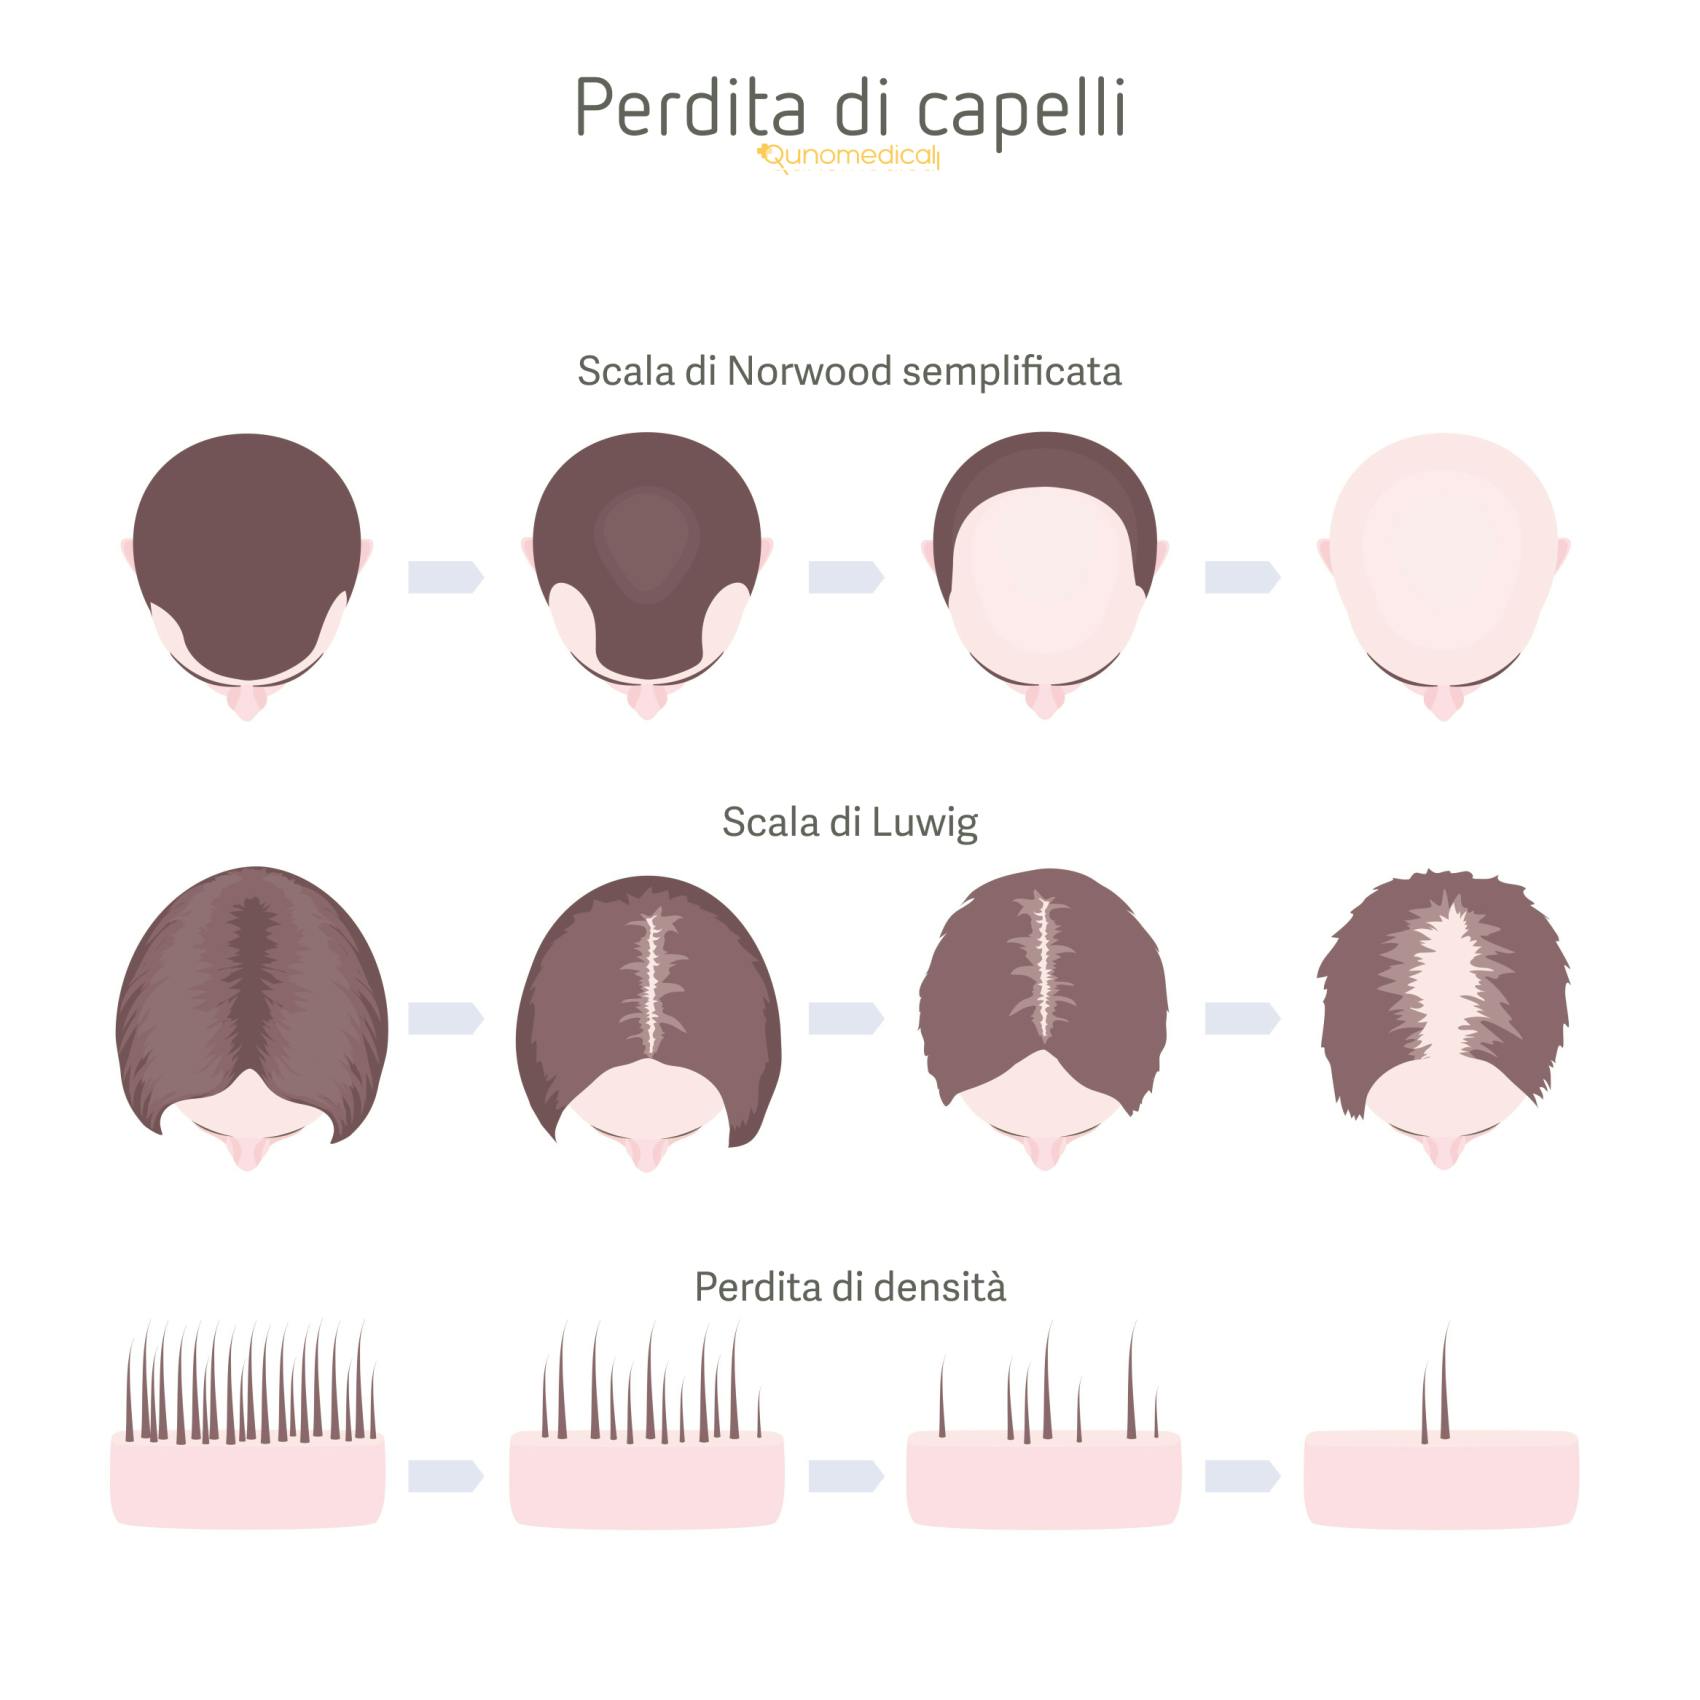 Illustrazione che mostra i diversi tipi di perdita di capelli femminile.